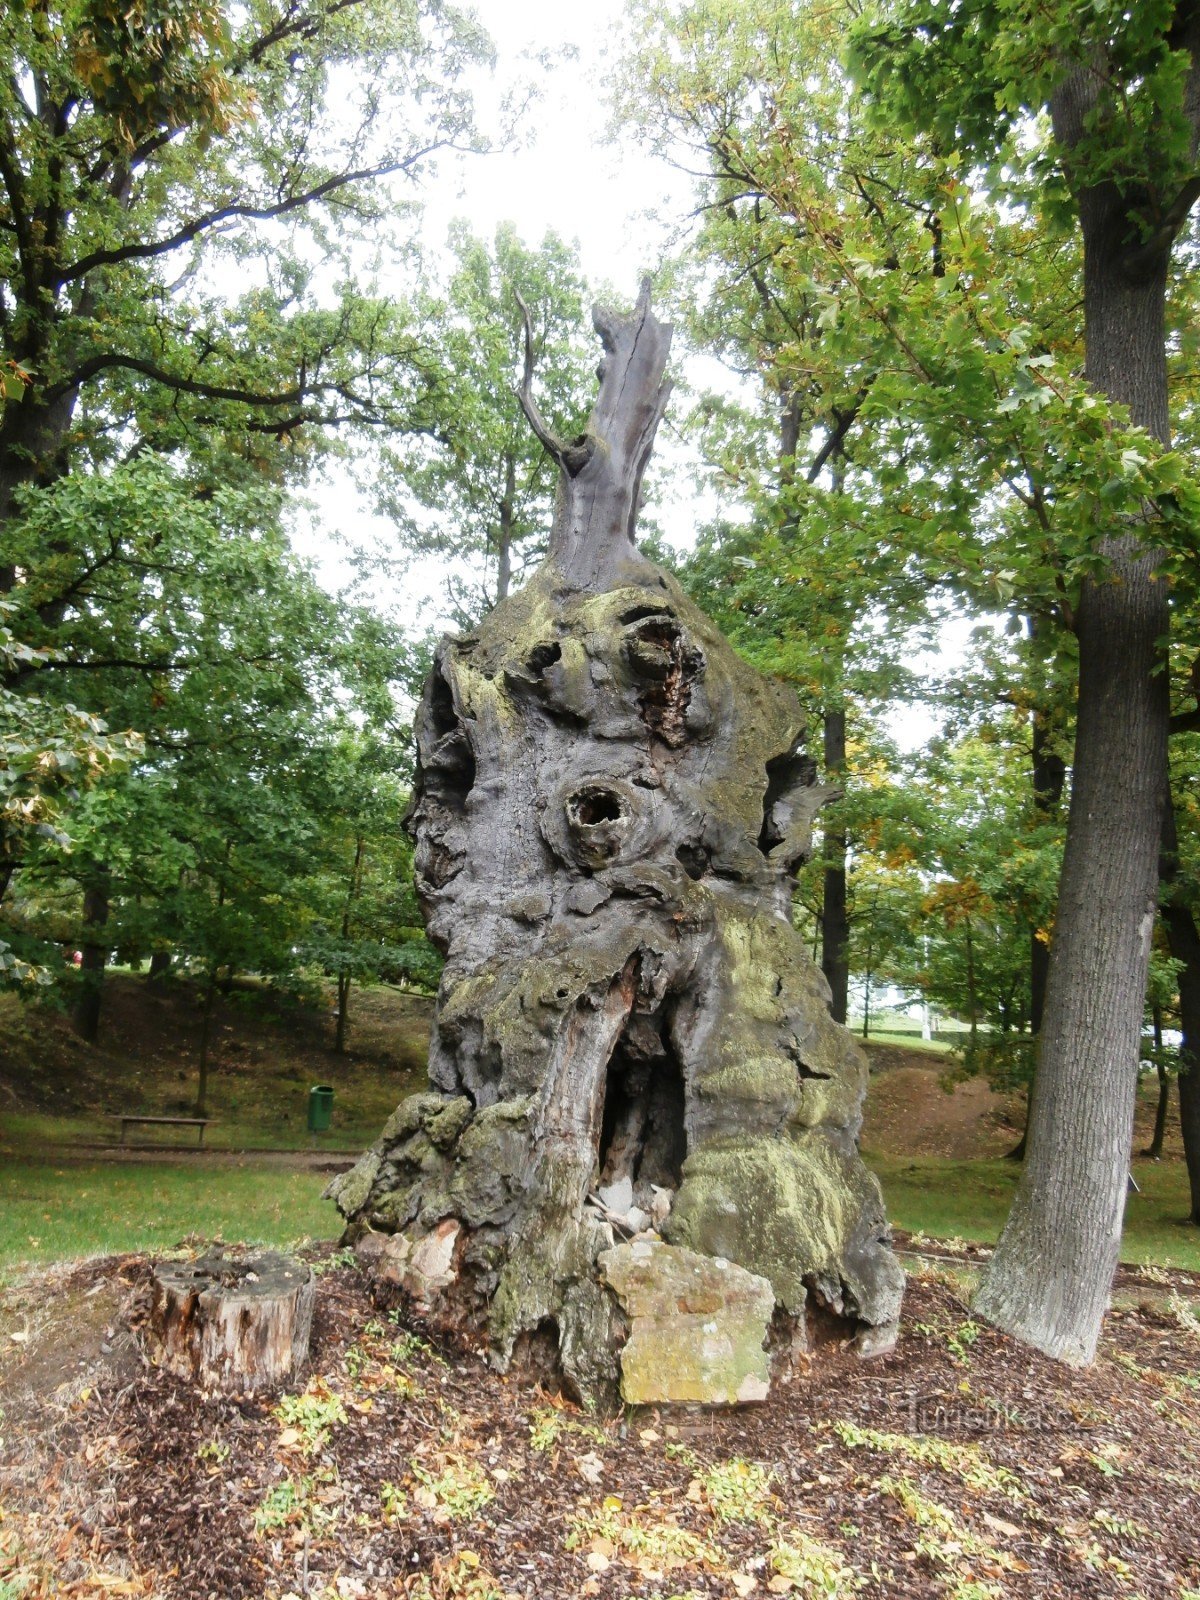 3. Torso of an oak tree